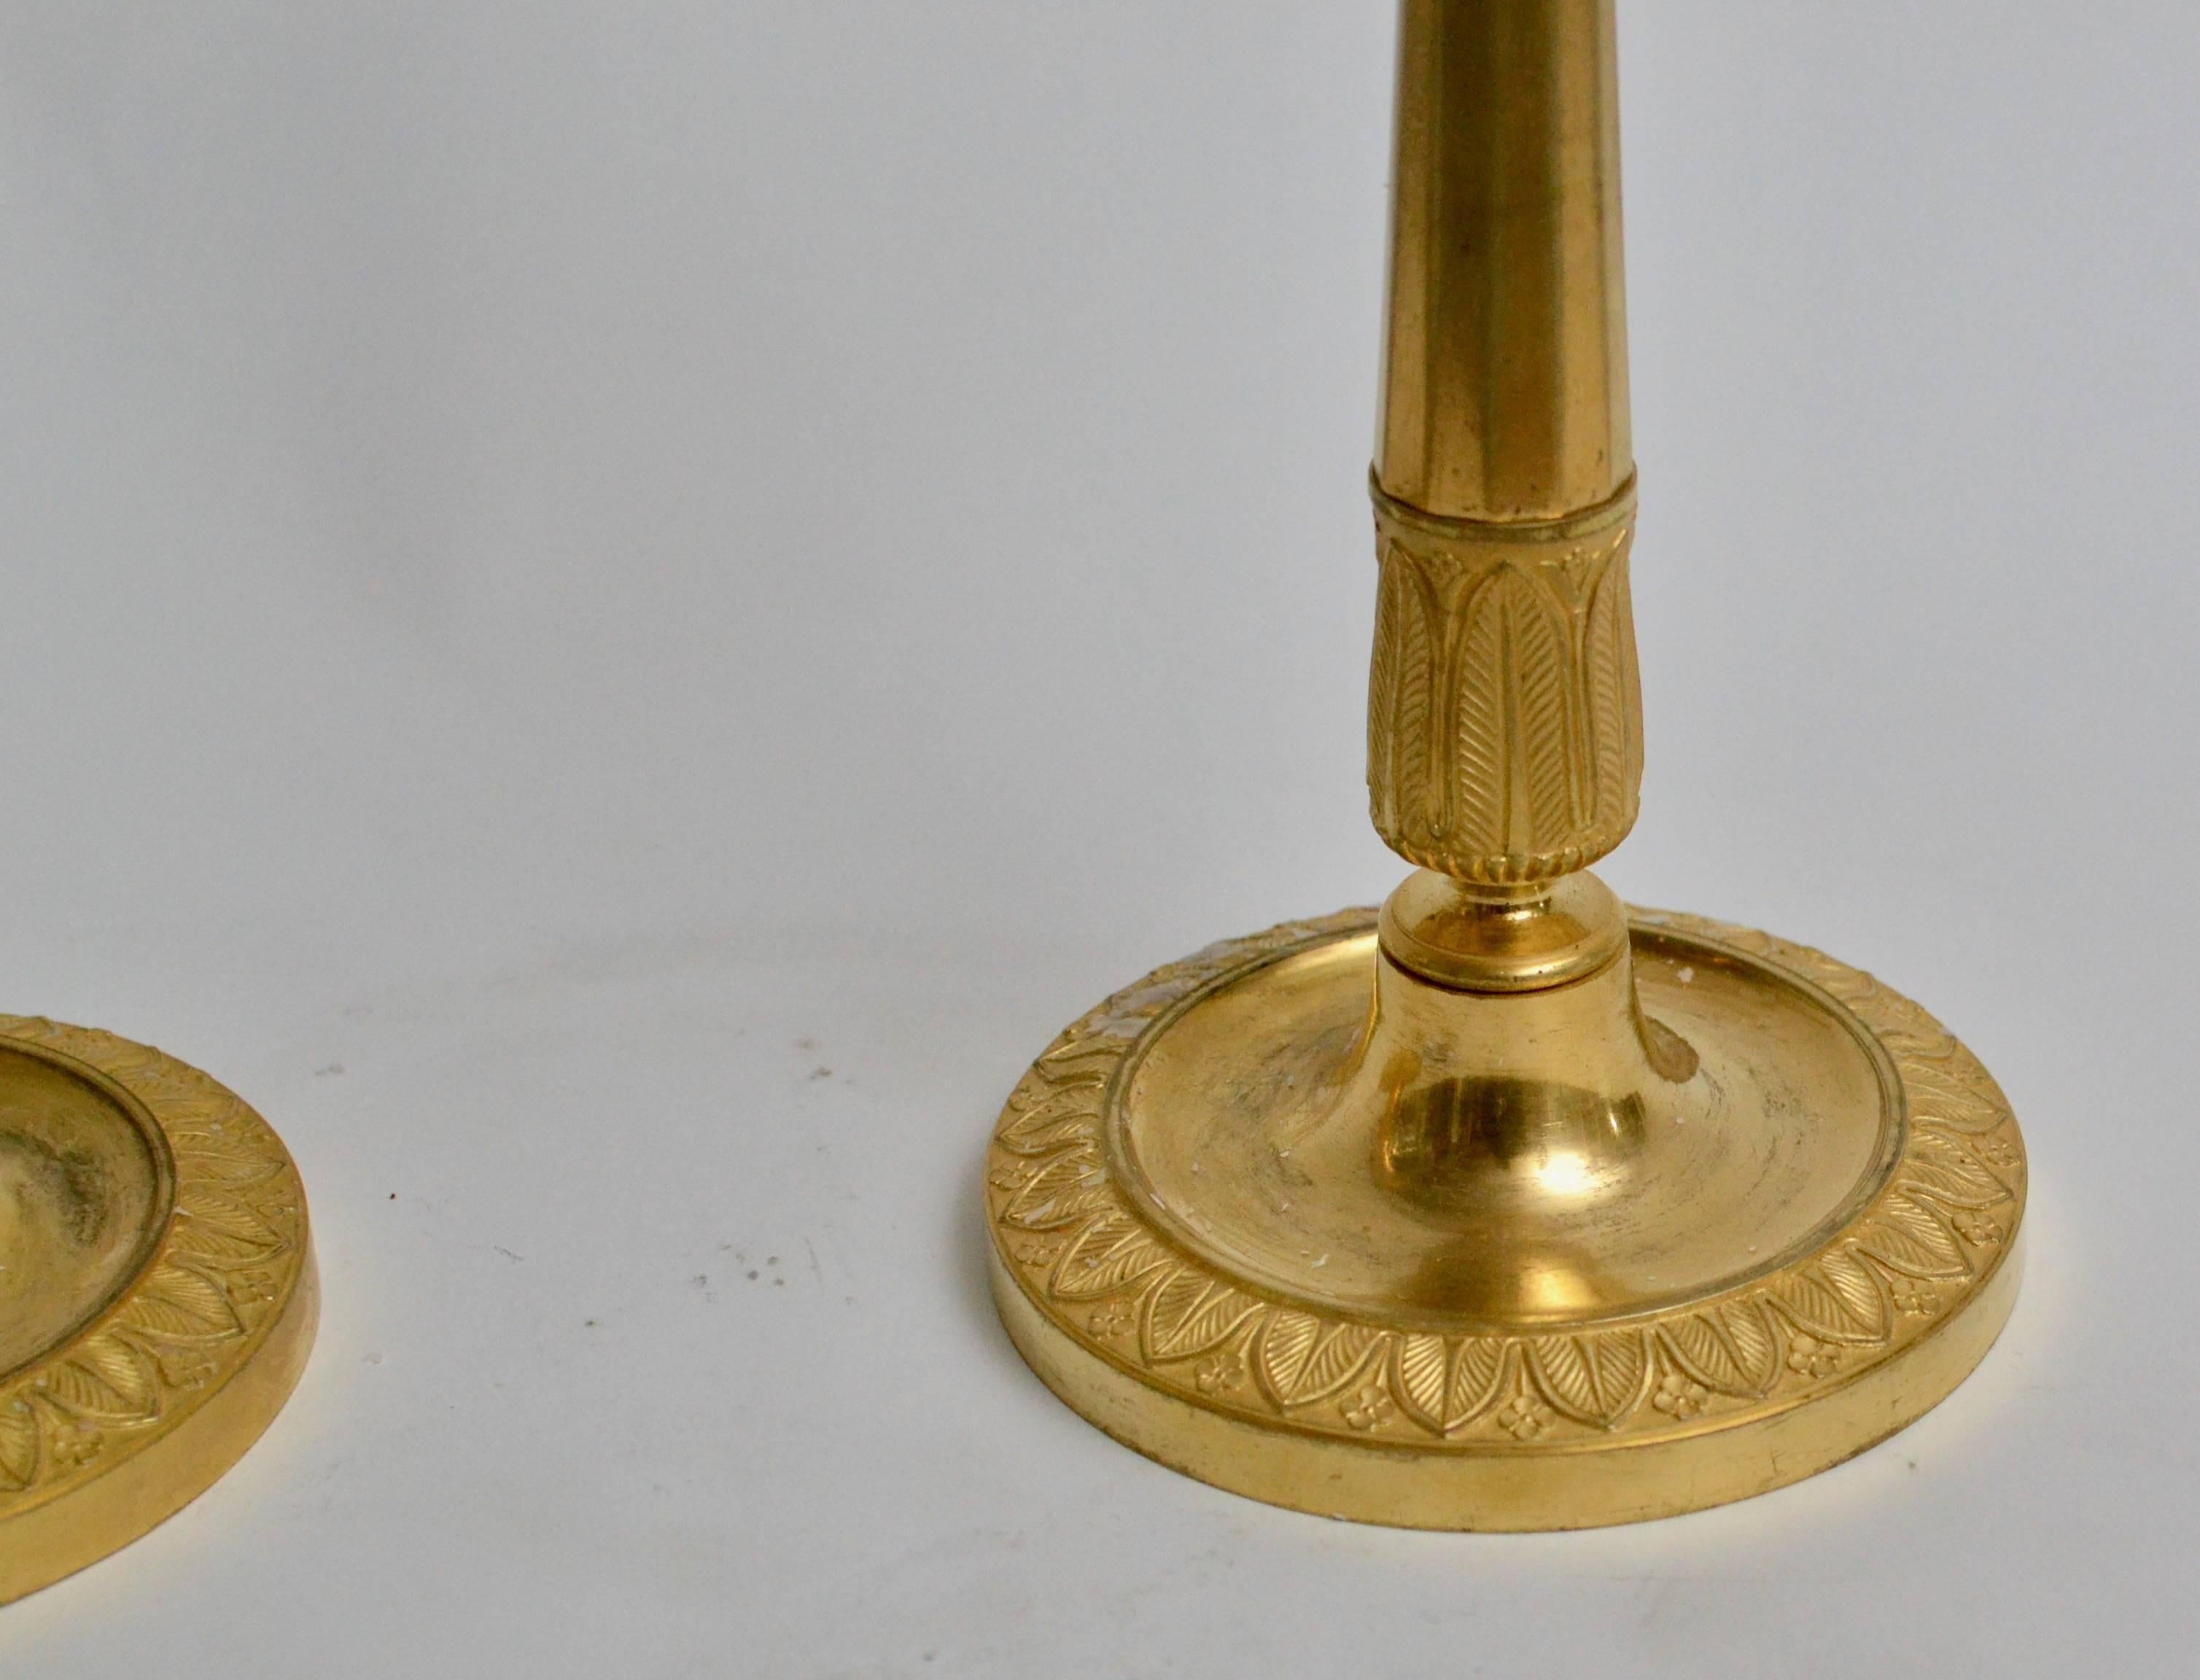 Pair of French Empire Gilt Bronze Candlesticks (Vergoldet)